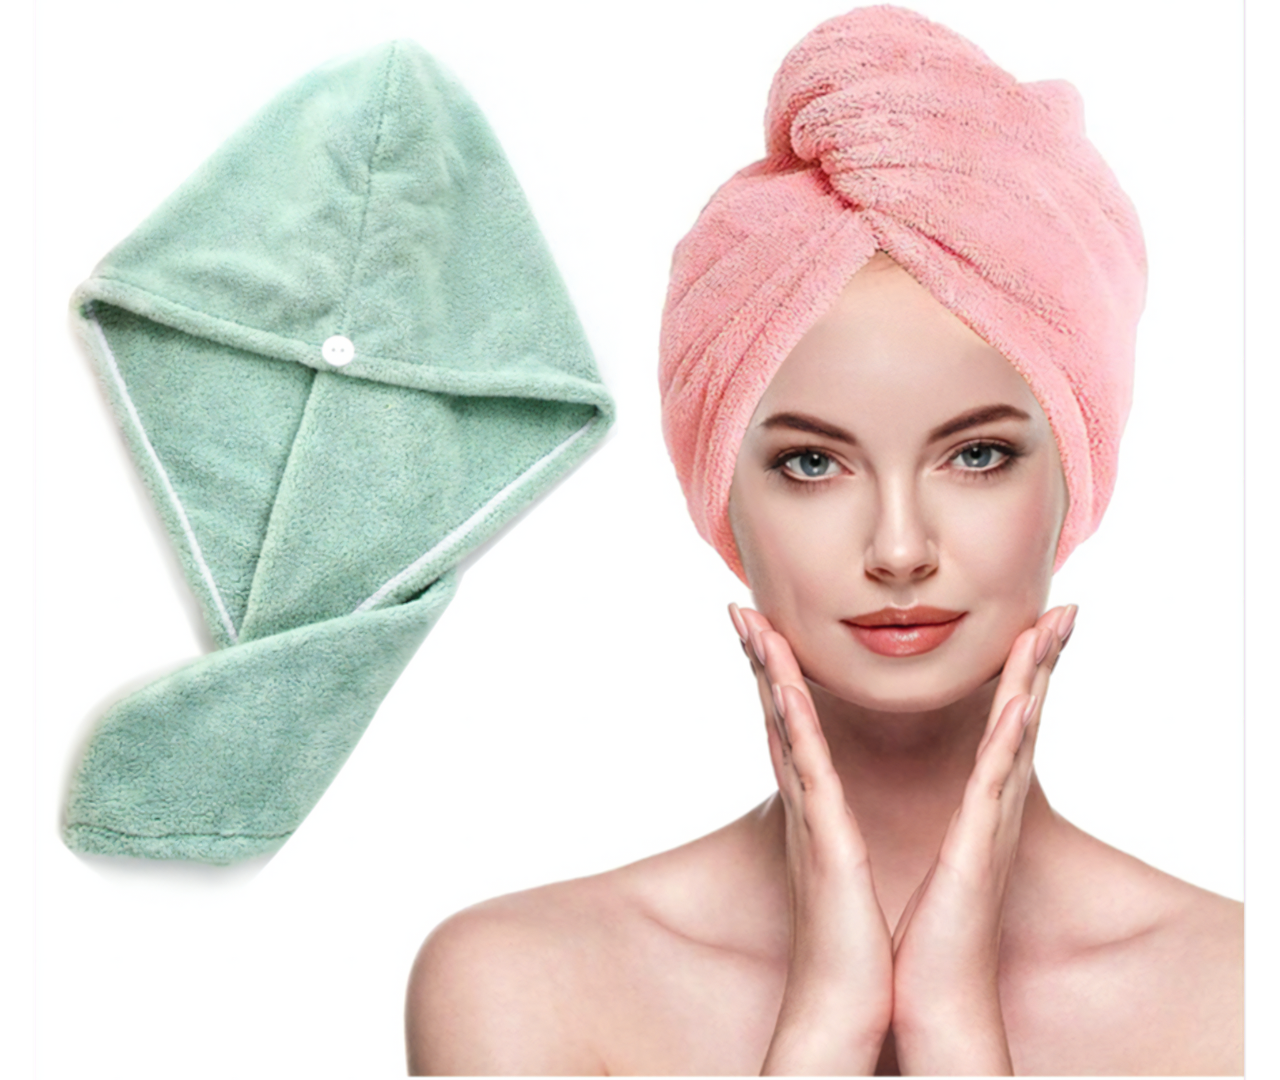 Acheter 30X30cm serviette en microfibre ménage salle de bain serviette de  visage couleur unie séchage rapide serviette de cheveux femmes petite  serviette absorbante serviette de visage